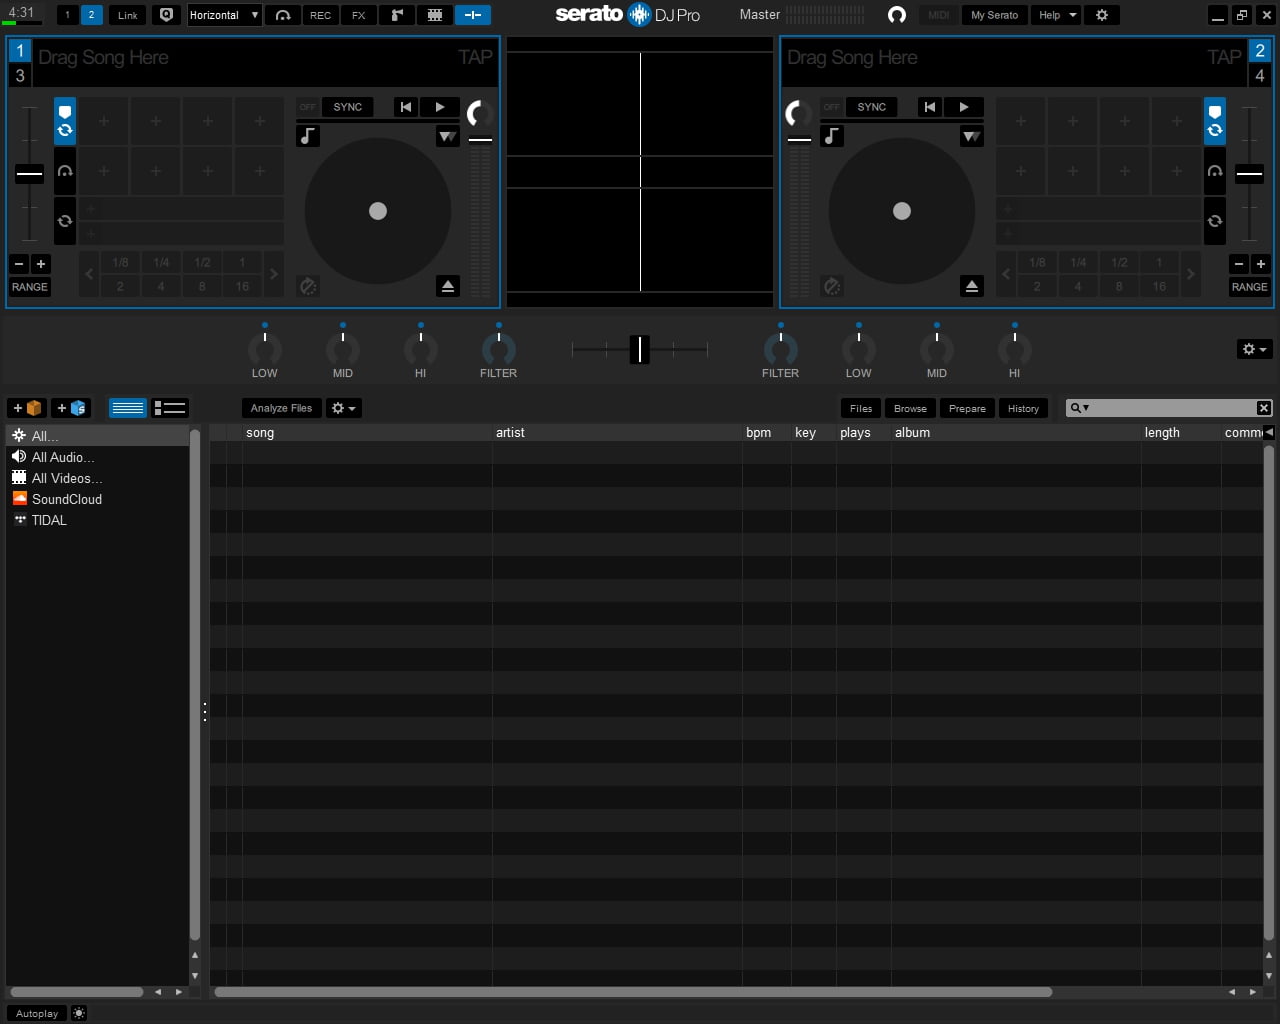 Serato DJ Pro 3.0.7.504 download the last version for ipod